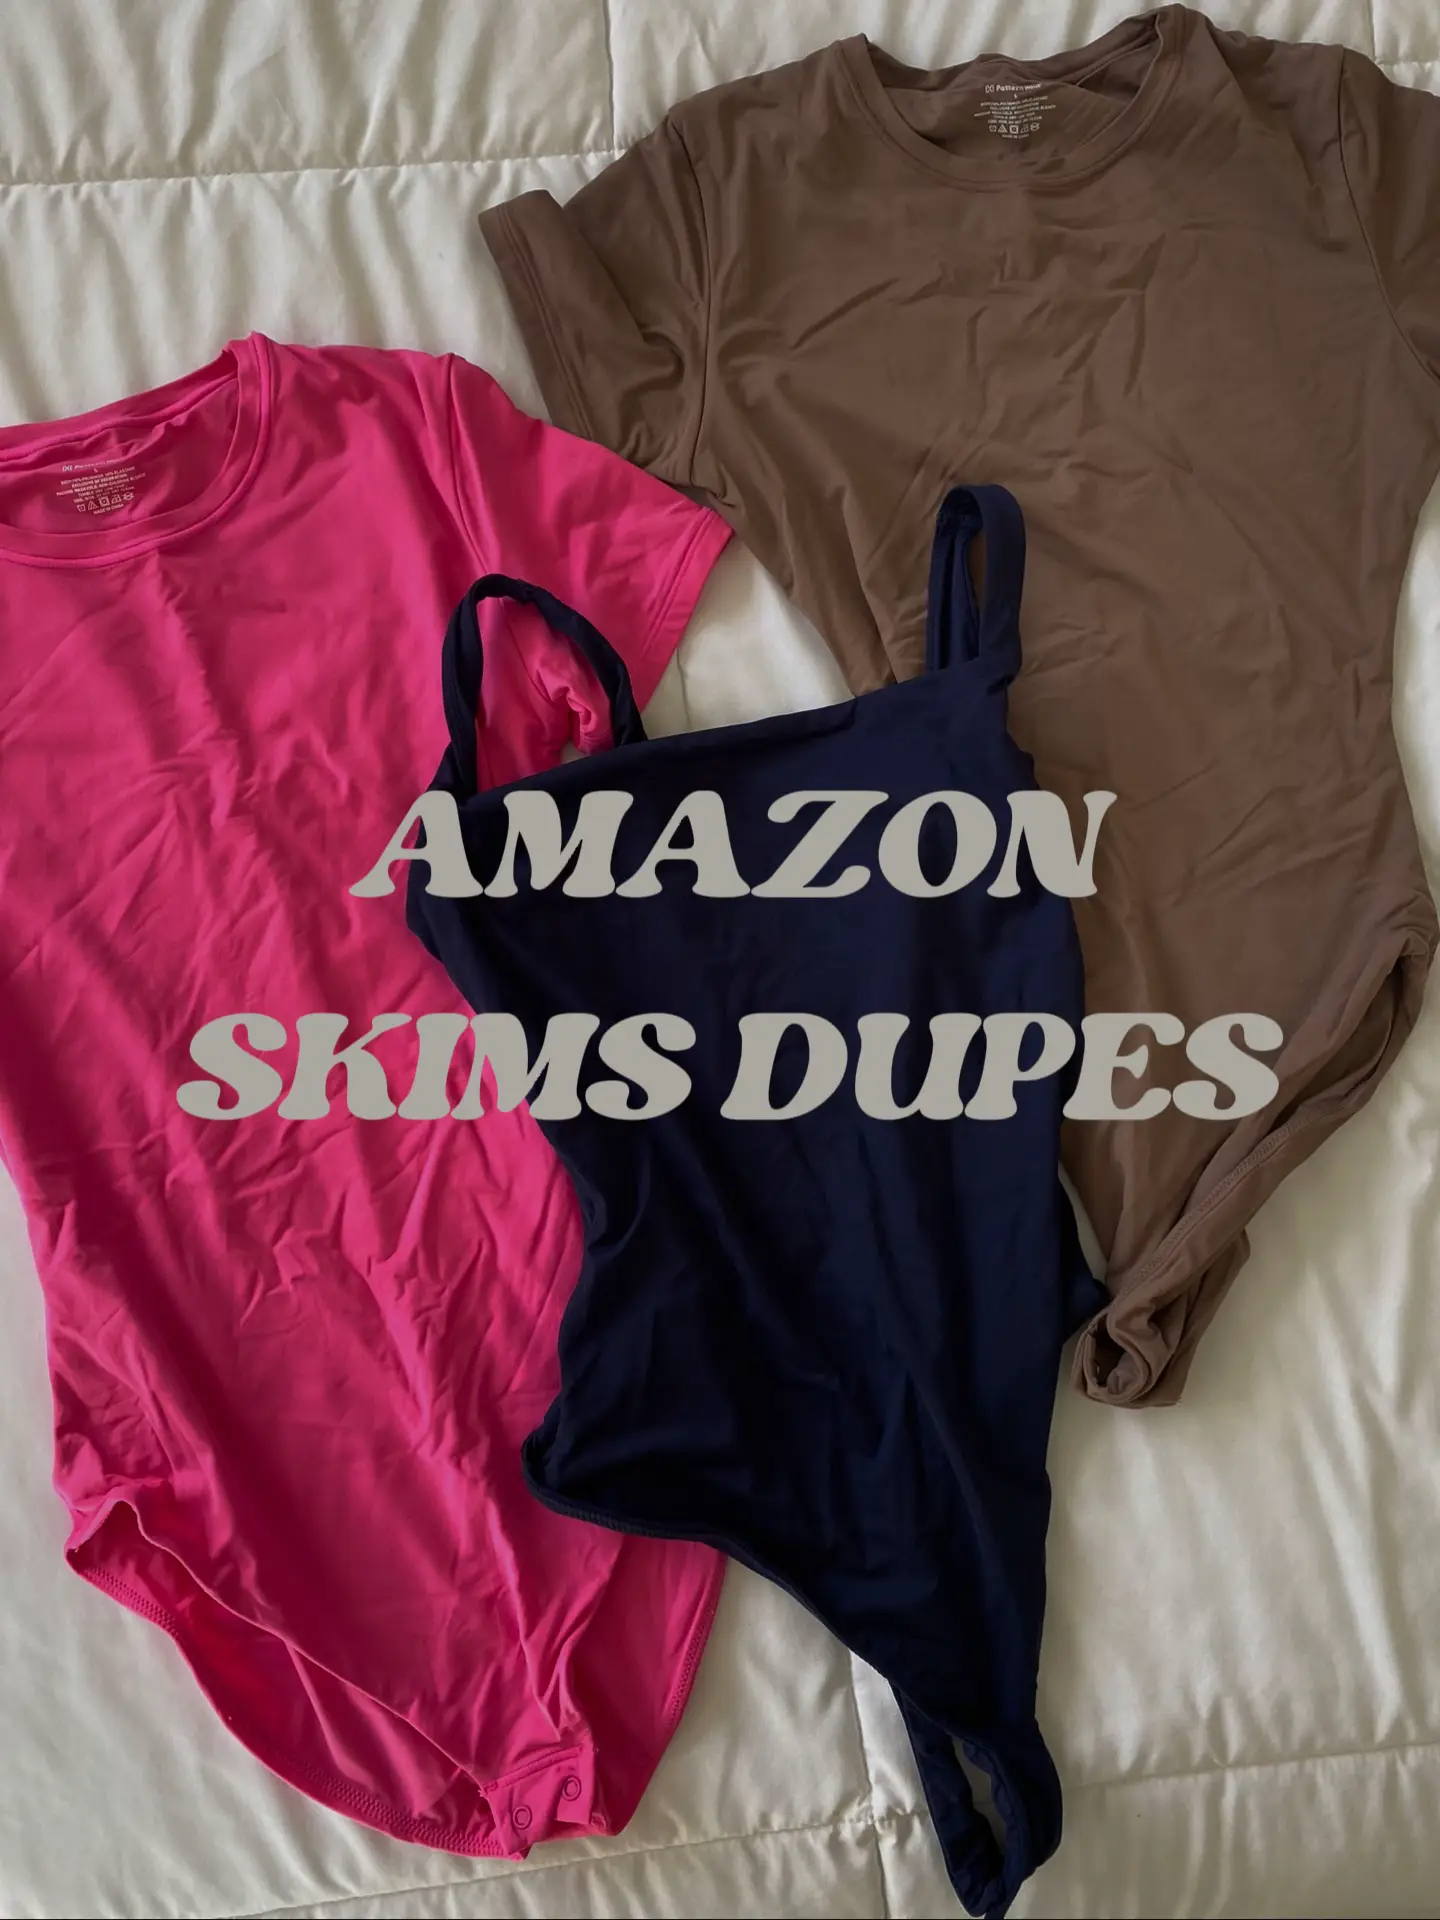 I got them in all colors 😍 #skims #dupe #zara #bodysuit